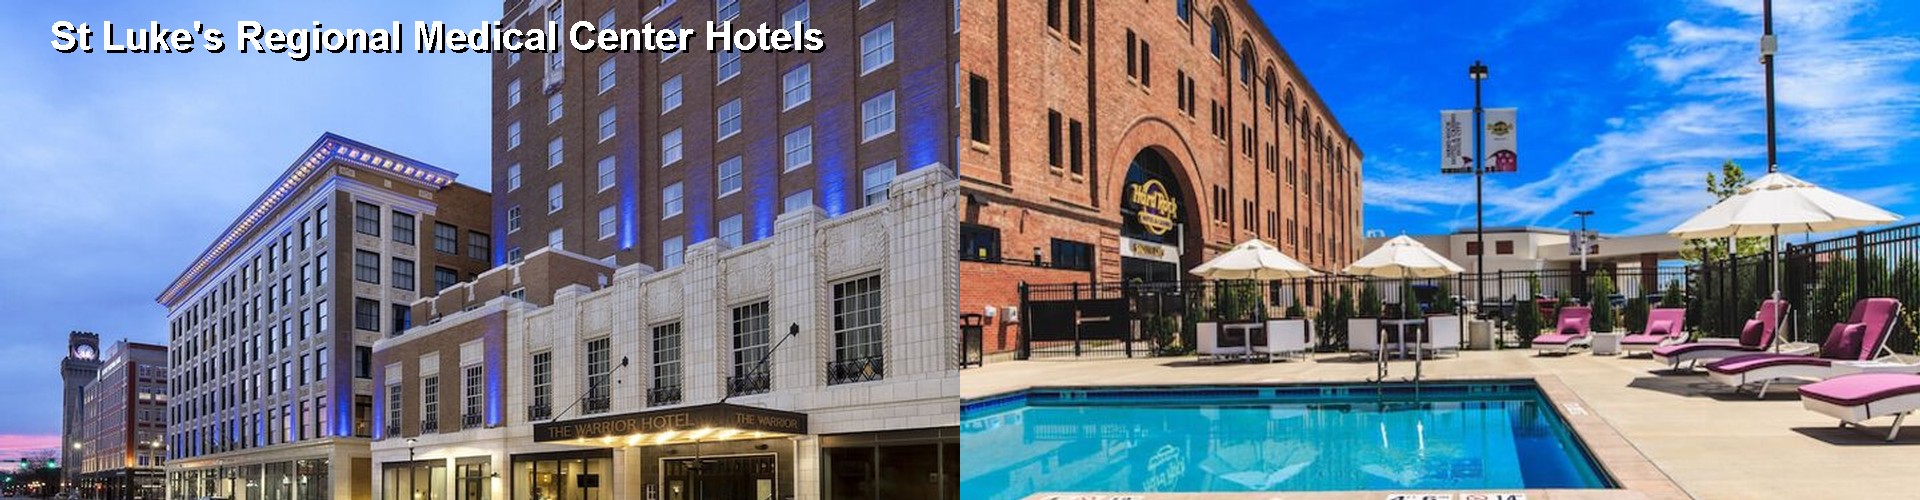 4 Best Hotels near St Luke's Regional Medical Center